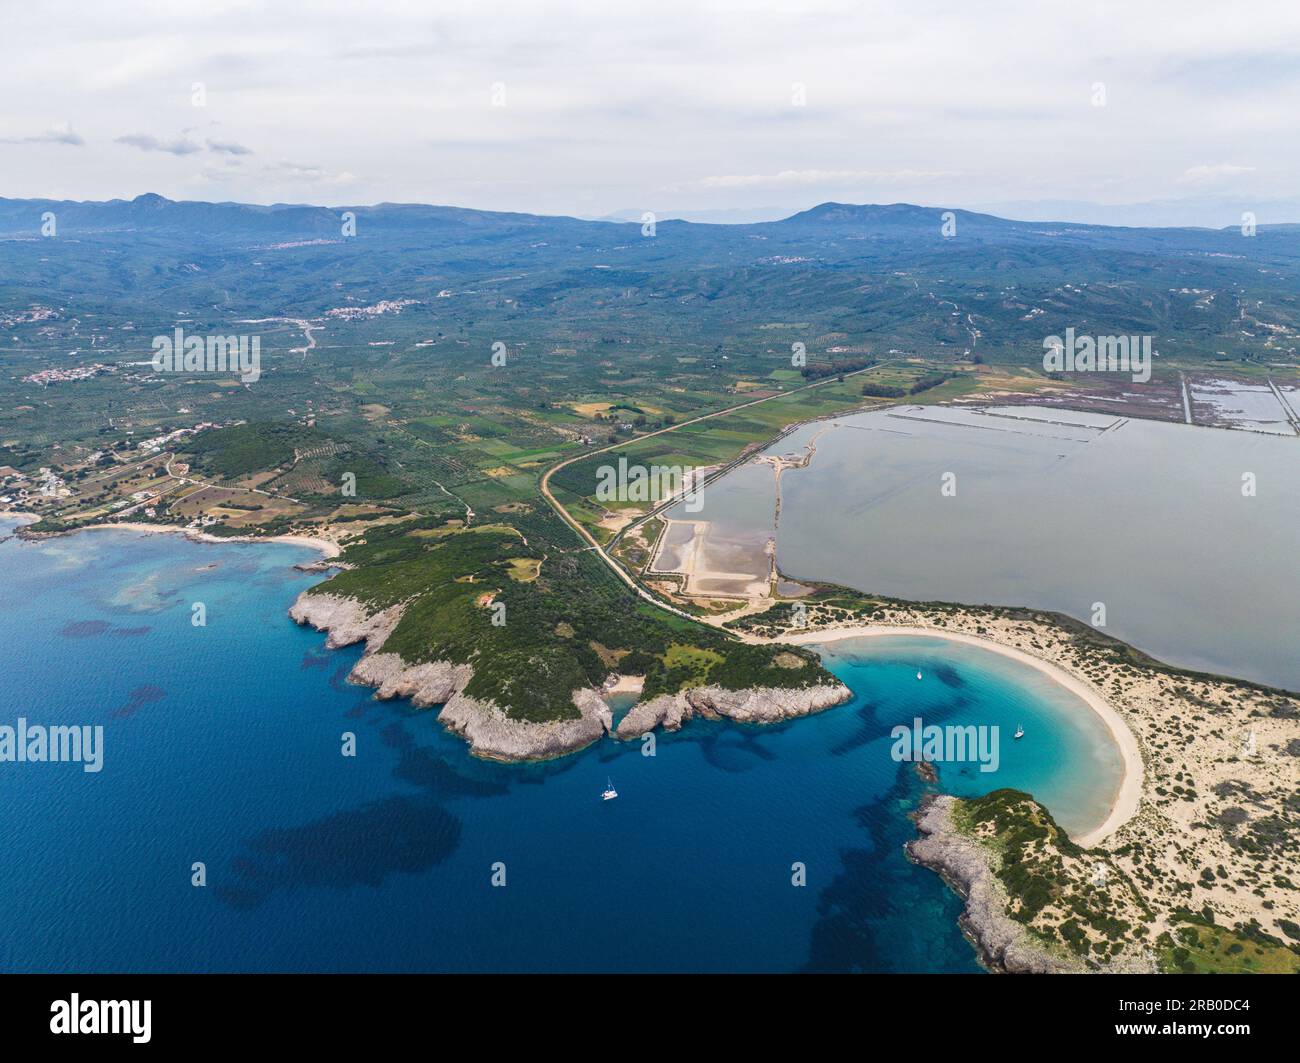 Aerial view of Voidokilia beach in Messinia, Greece Stock Photo